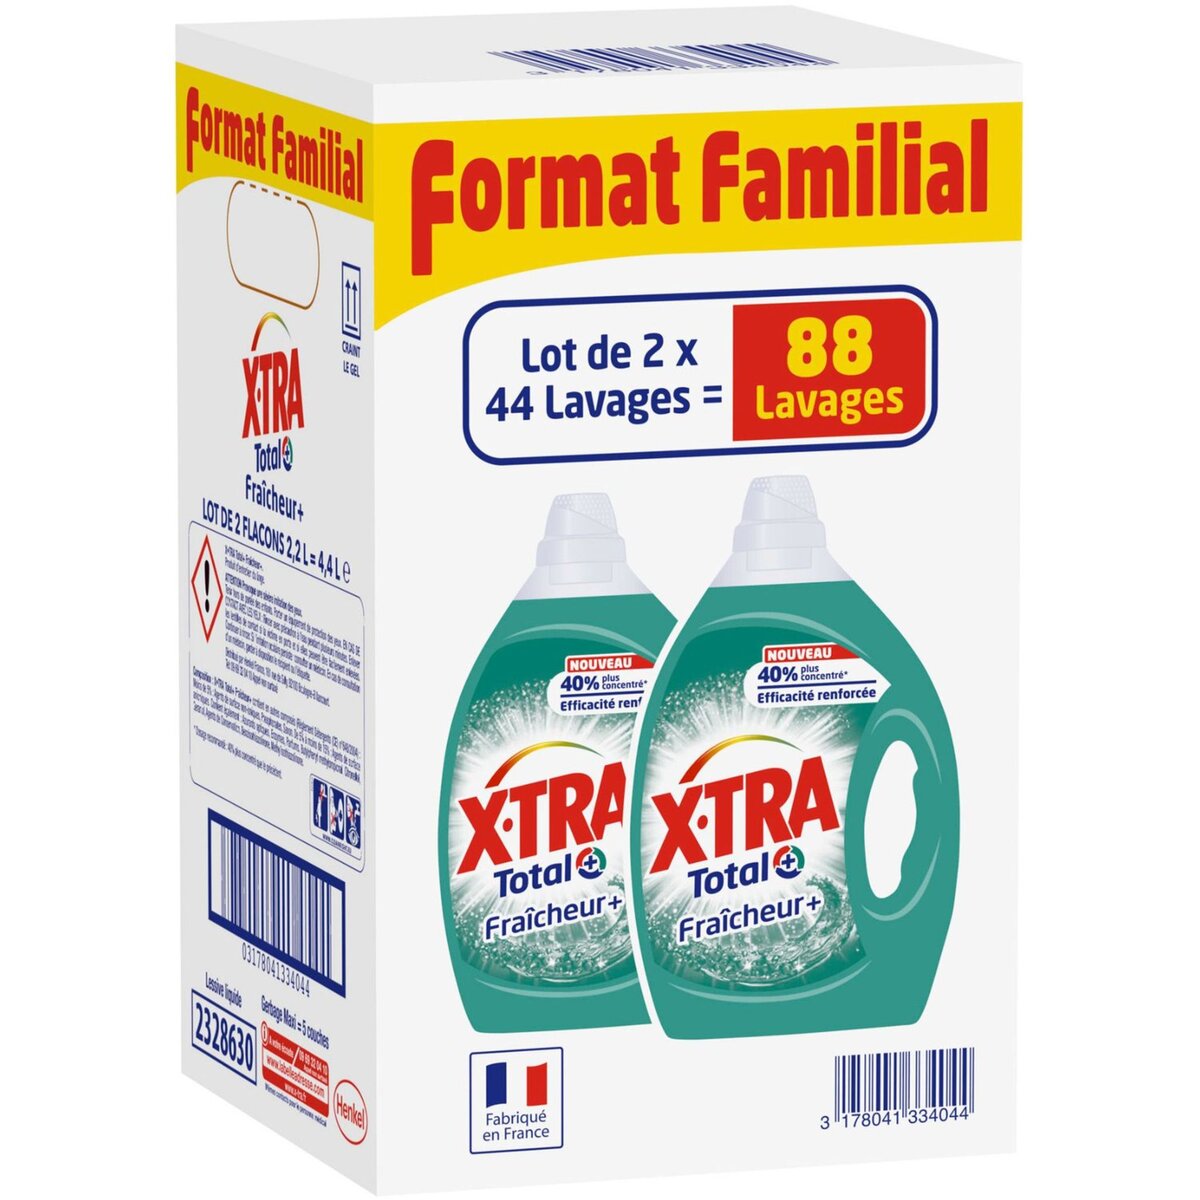 X-TRA Xtra lessive diluée fraicheur 2x 2,2l format familial